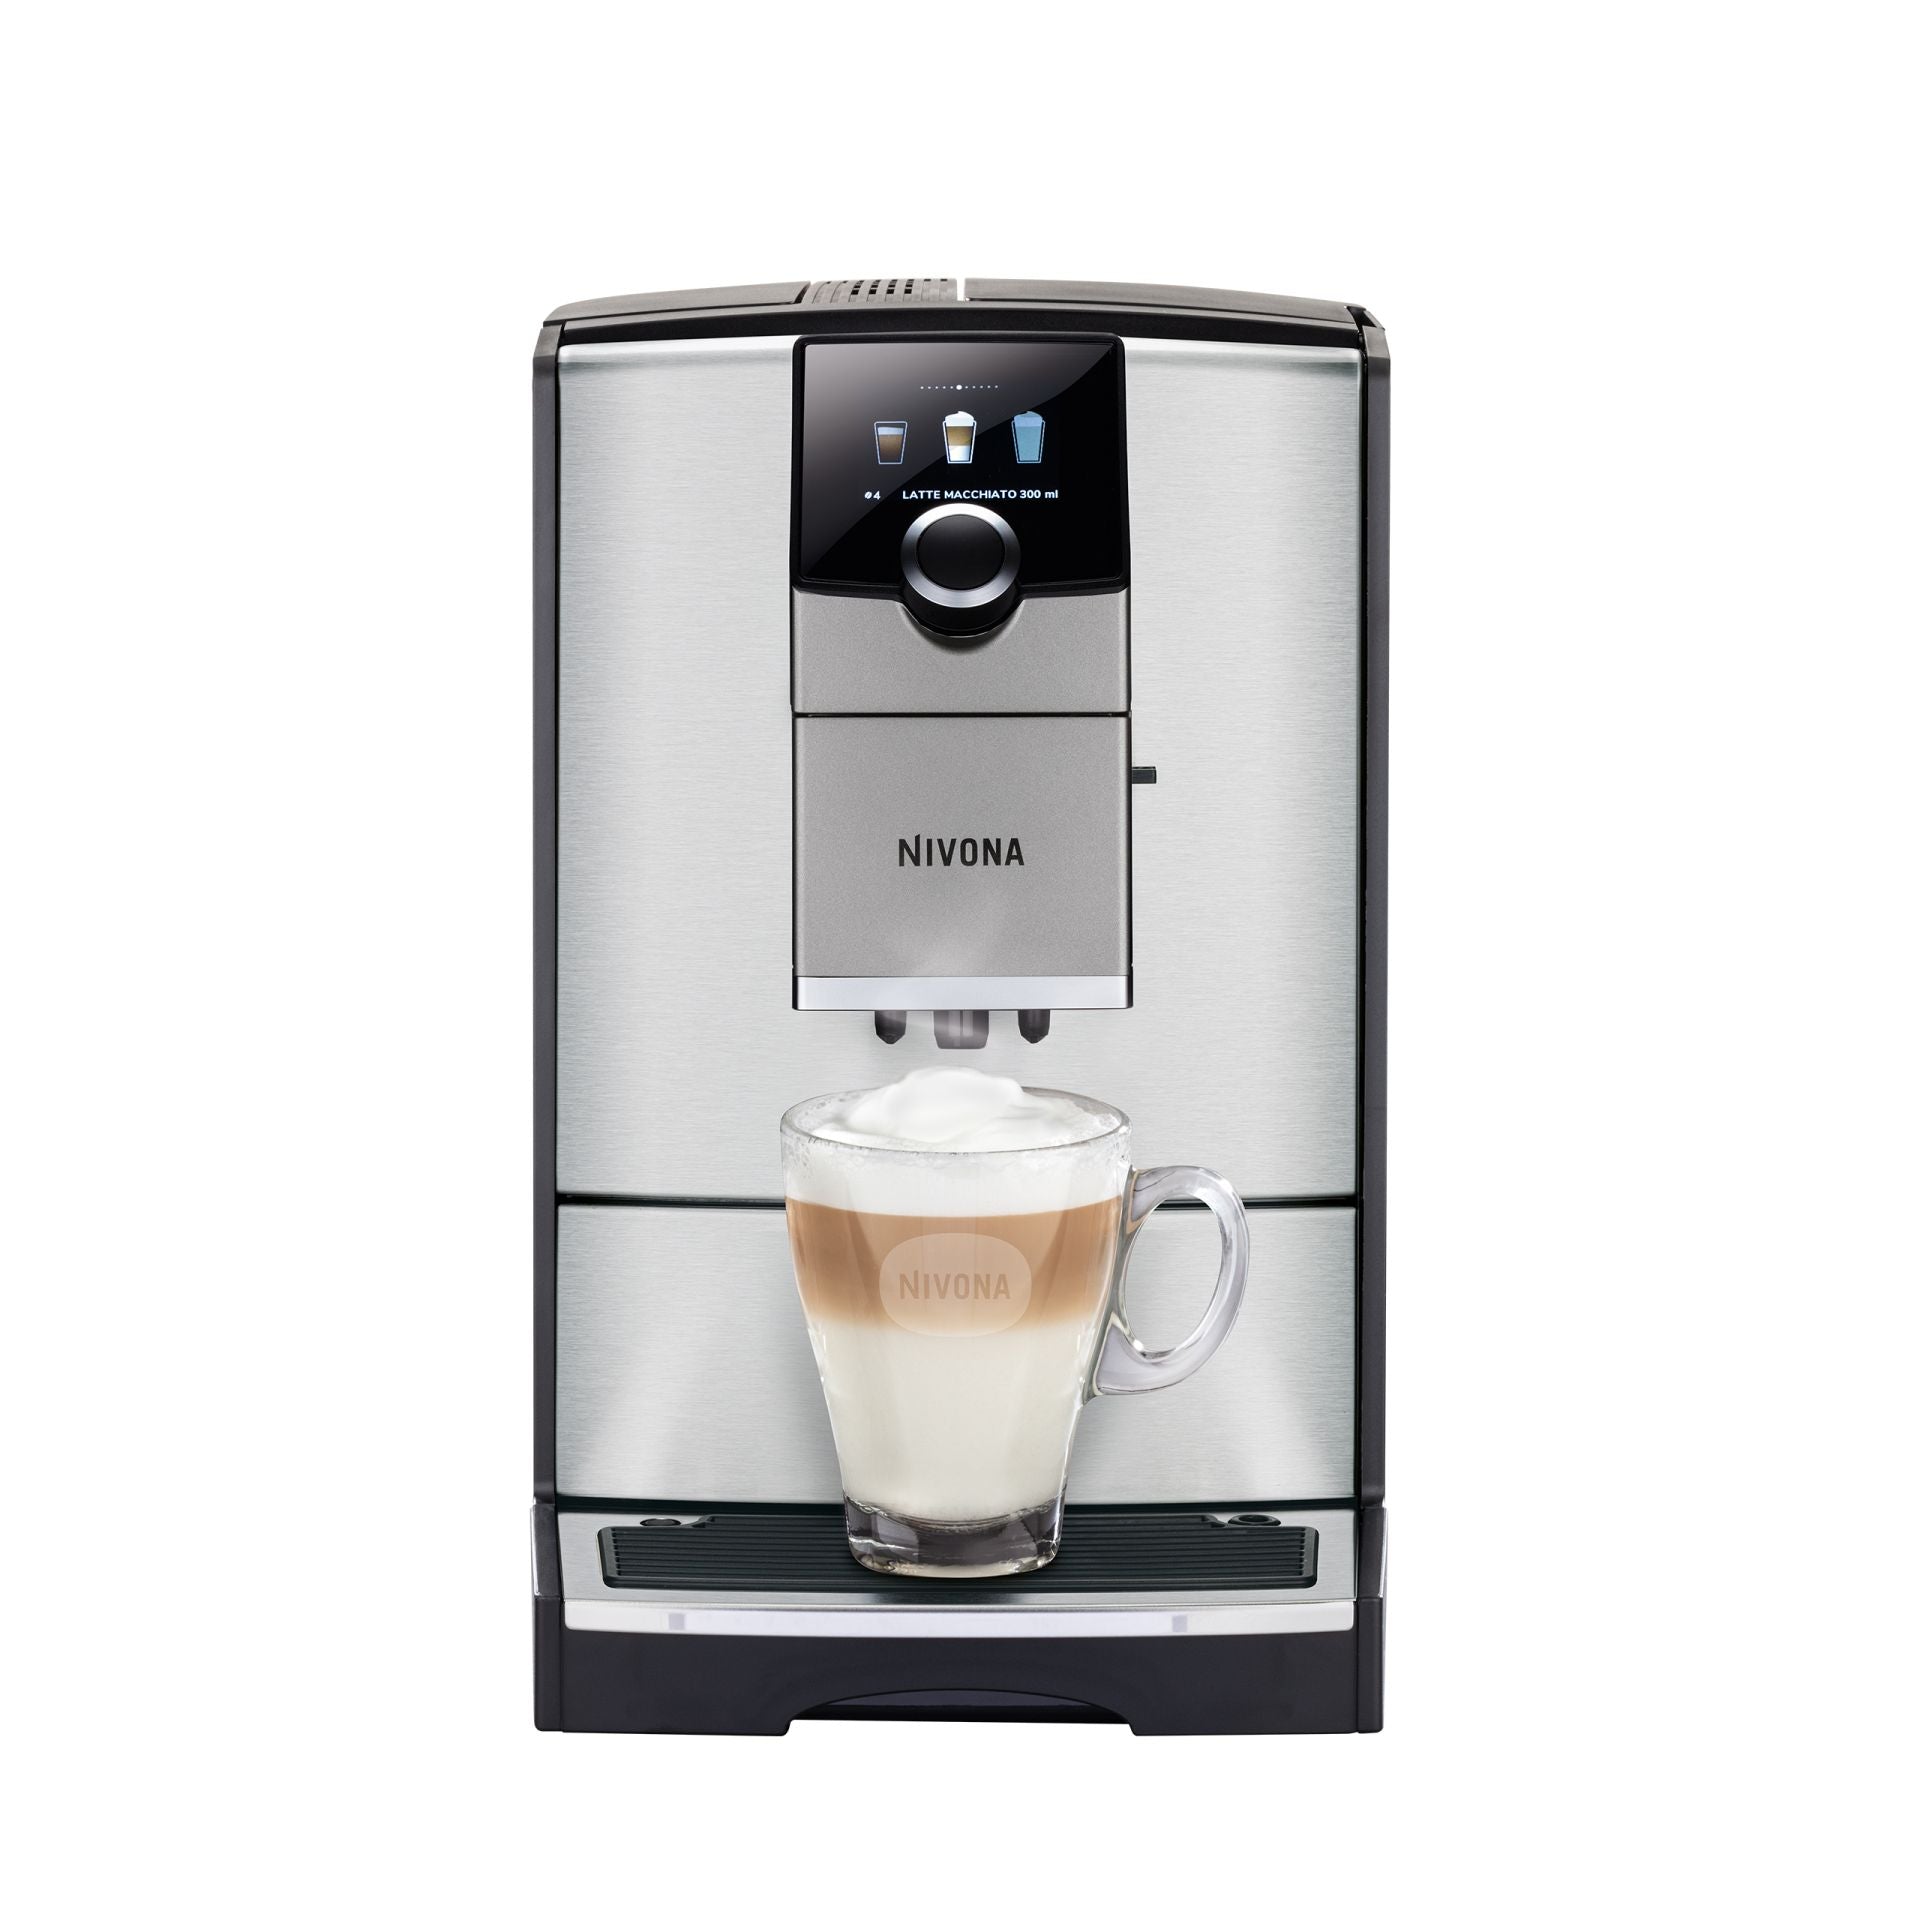 NICR 795 CafeRomatica fully automatic espresso machine